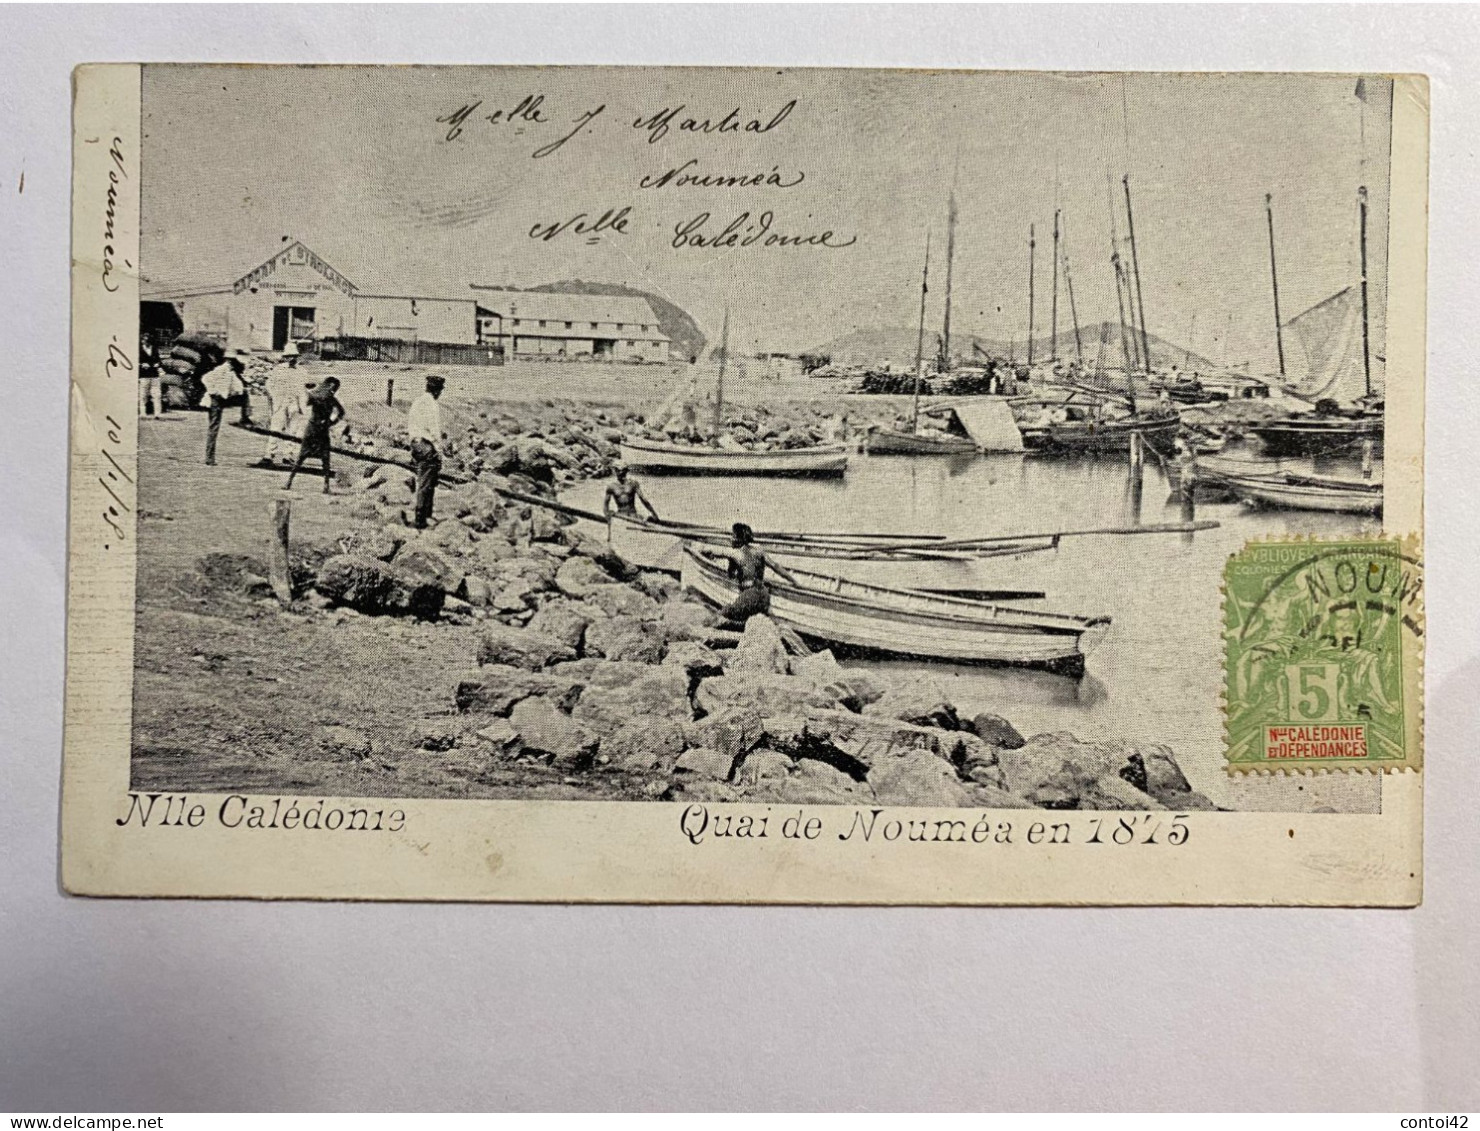 NOUVELLE CALEDONIE QUAI DE NOUMEA EN 1875 TIMBRE OBLITERATION - Nouvelle Calédonie